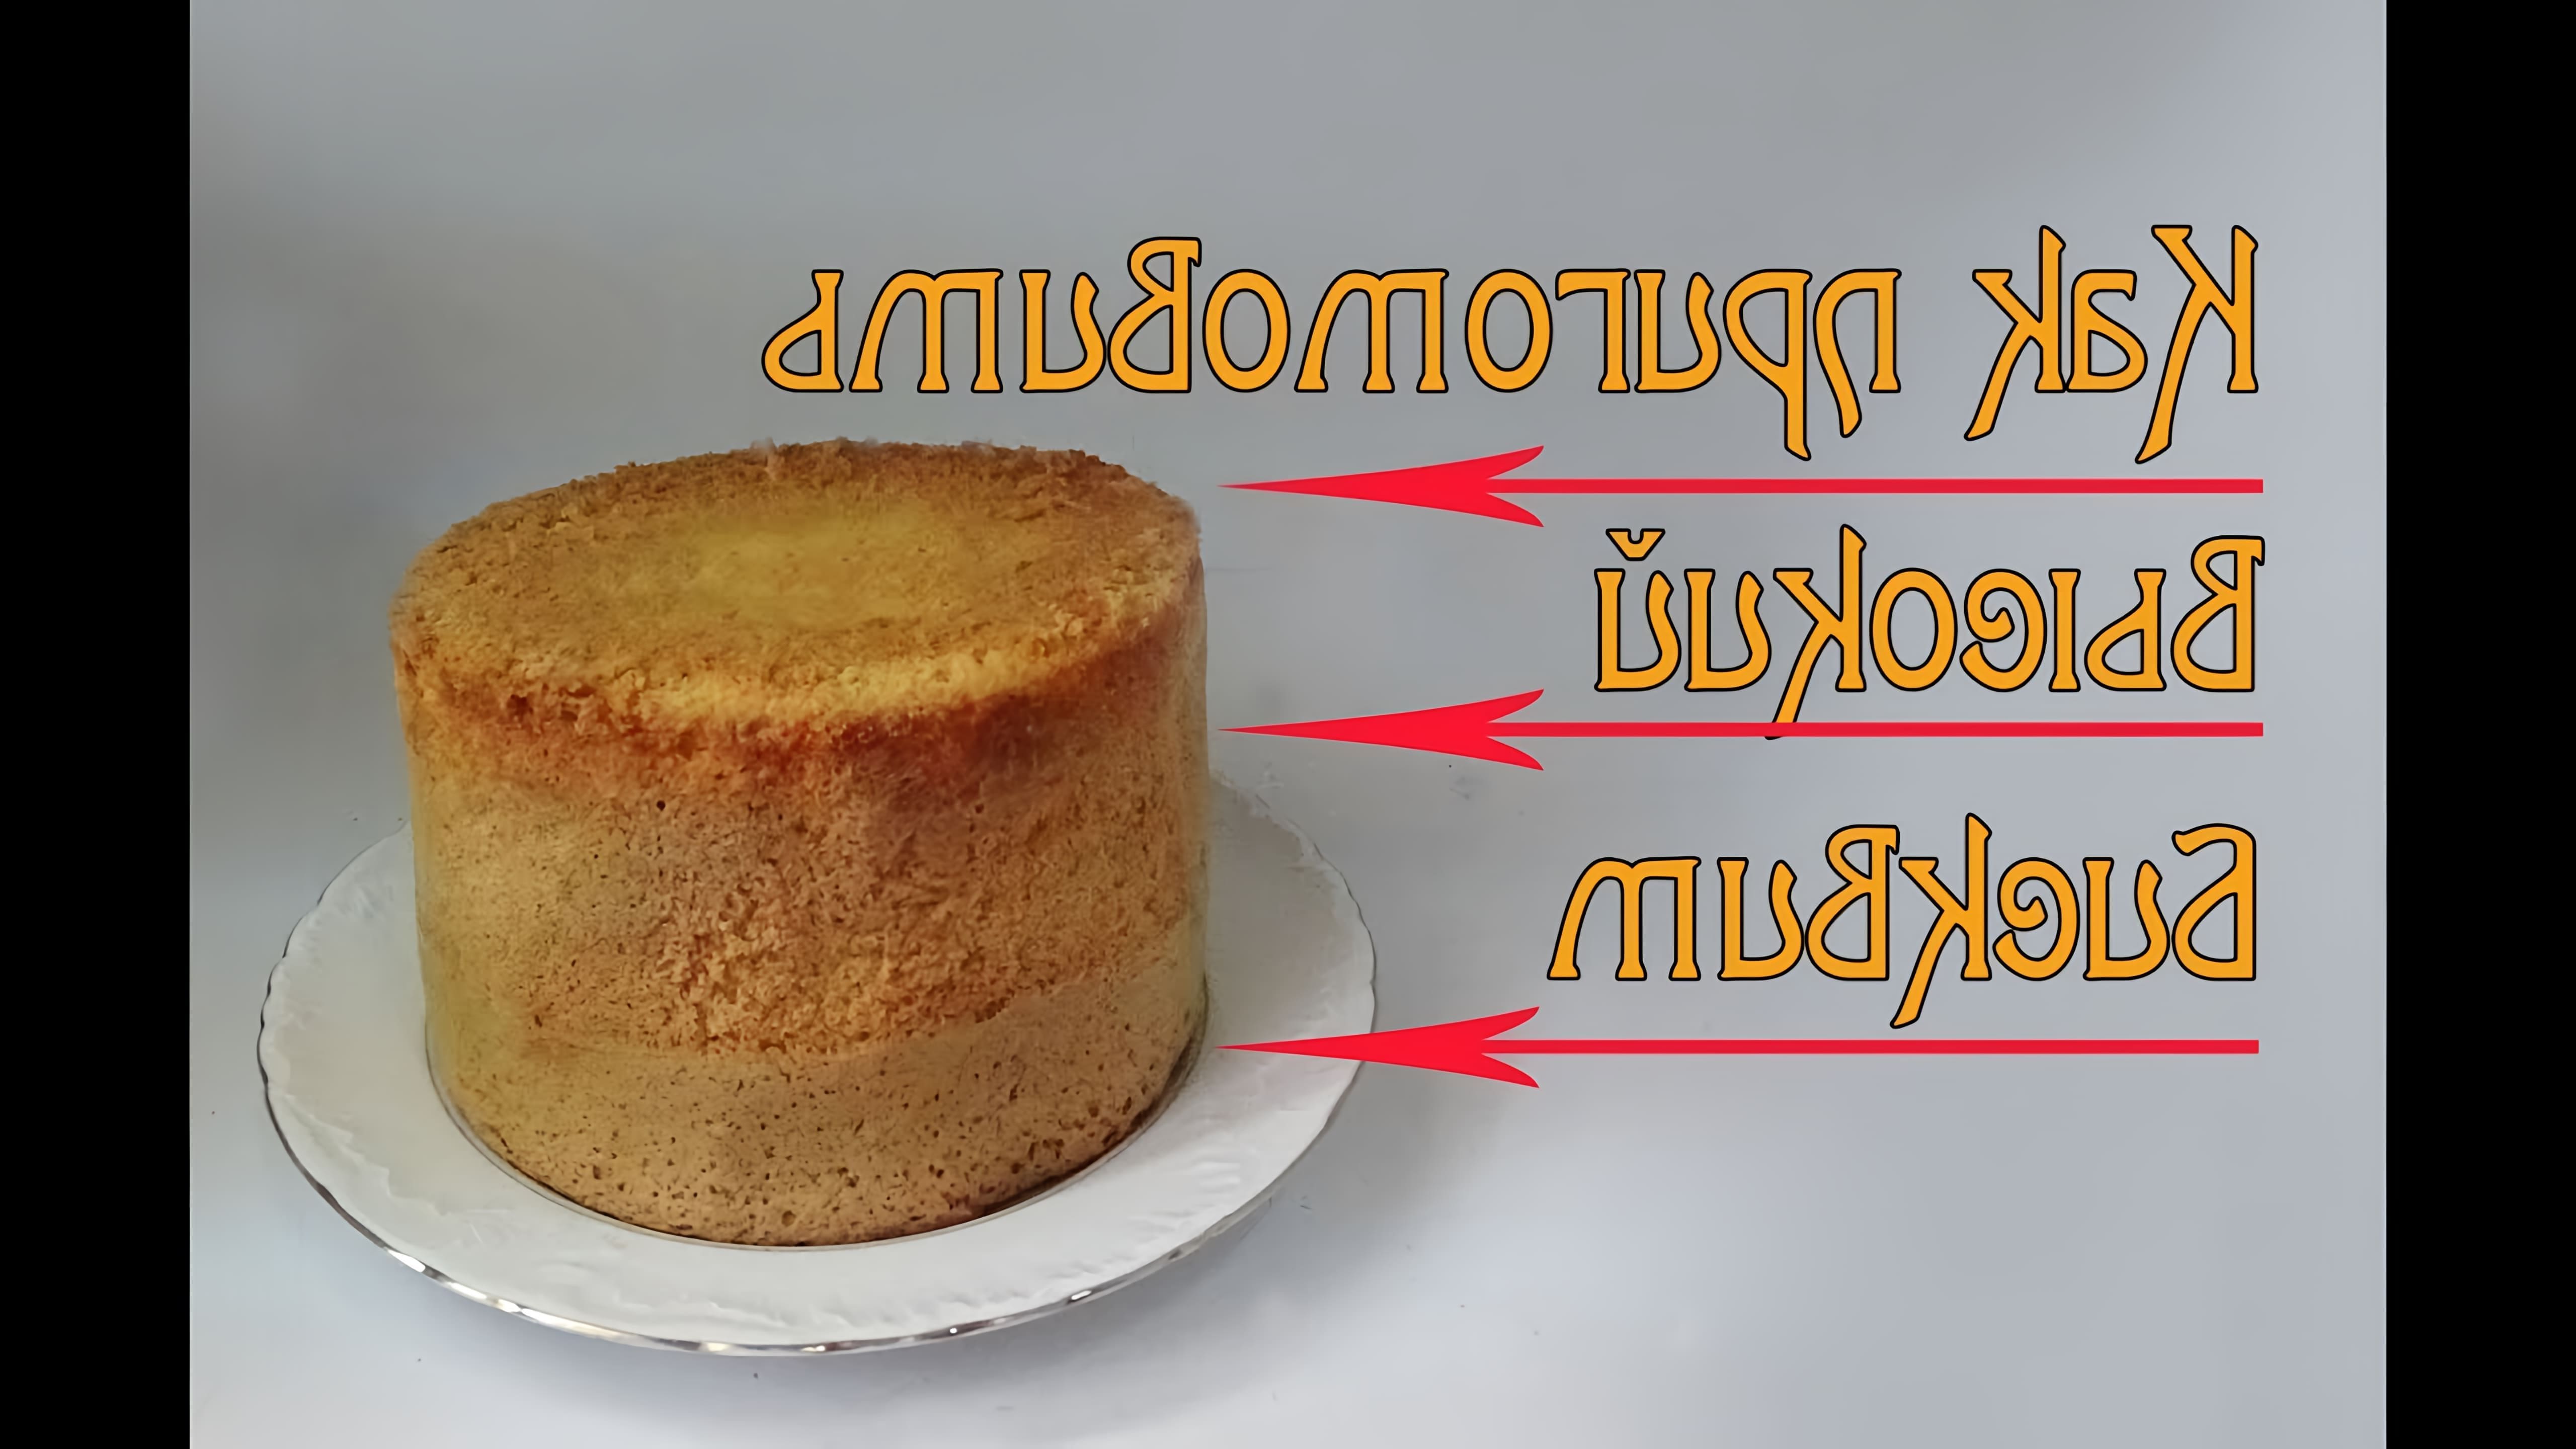 В этом видео демонстрируется, как испечь высокий бисквит без использования высокой формы